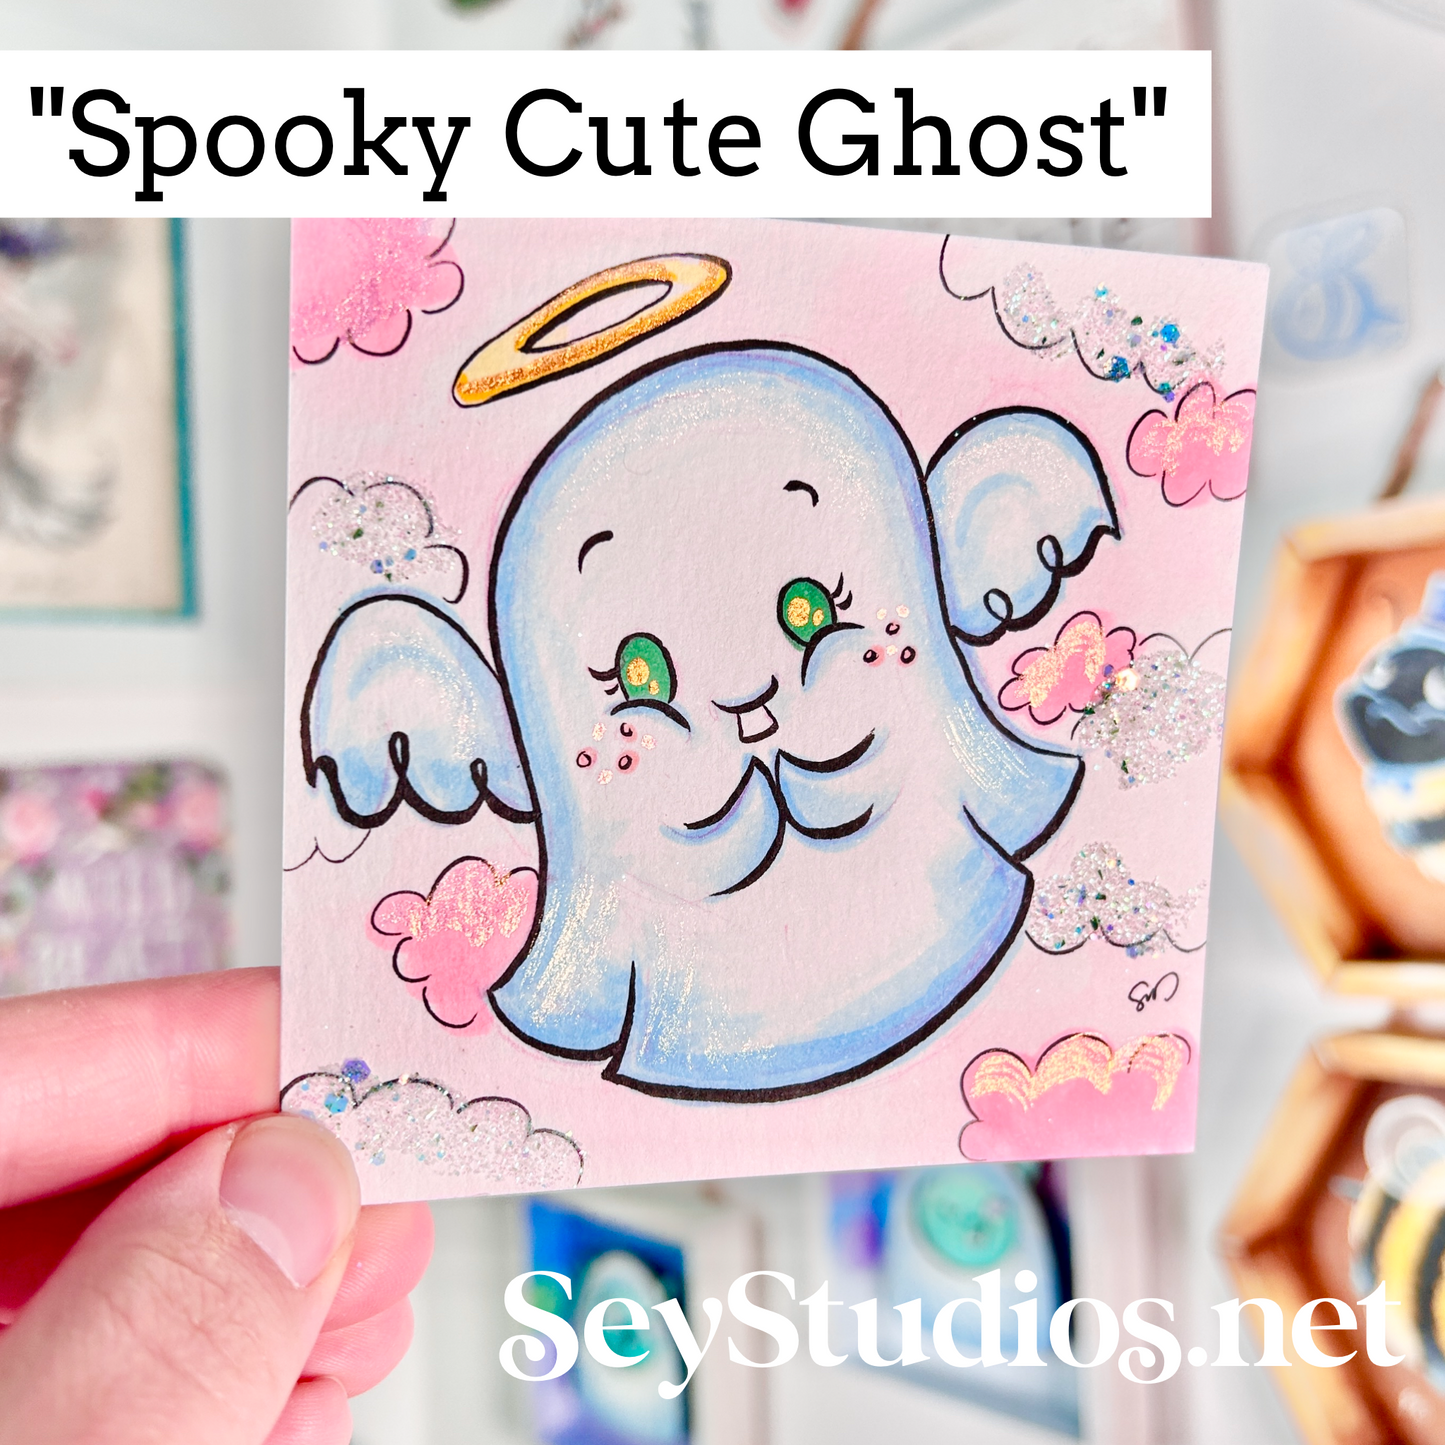 Original - “Spooky Cute Ghost” Sketch